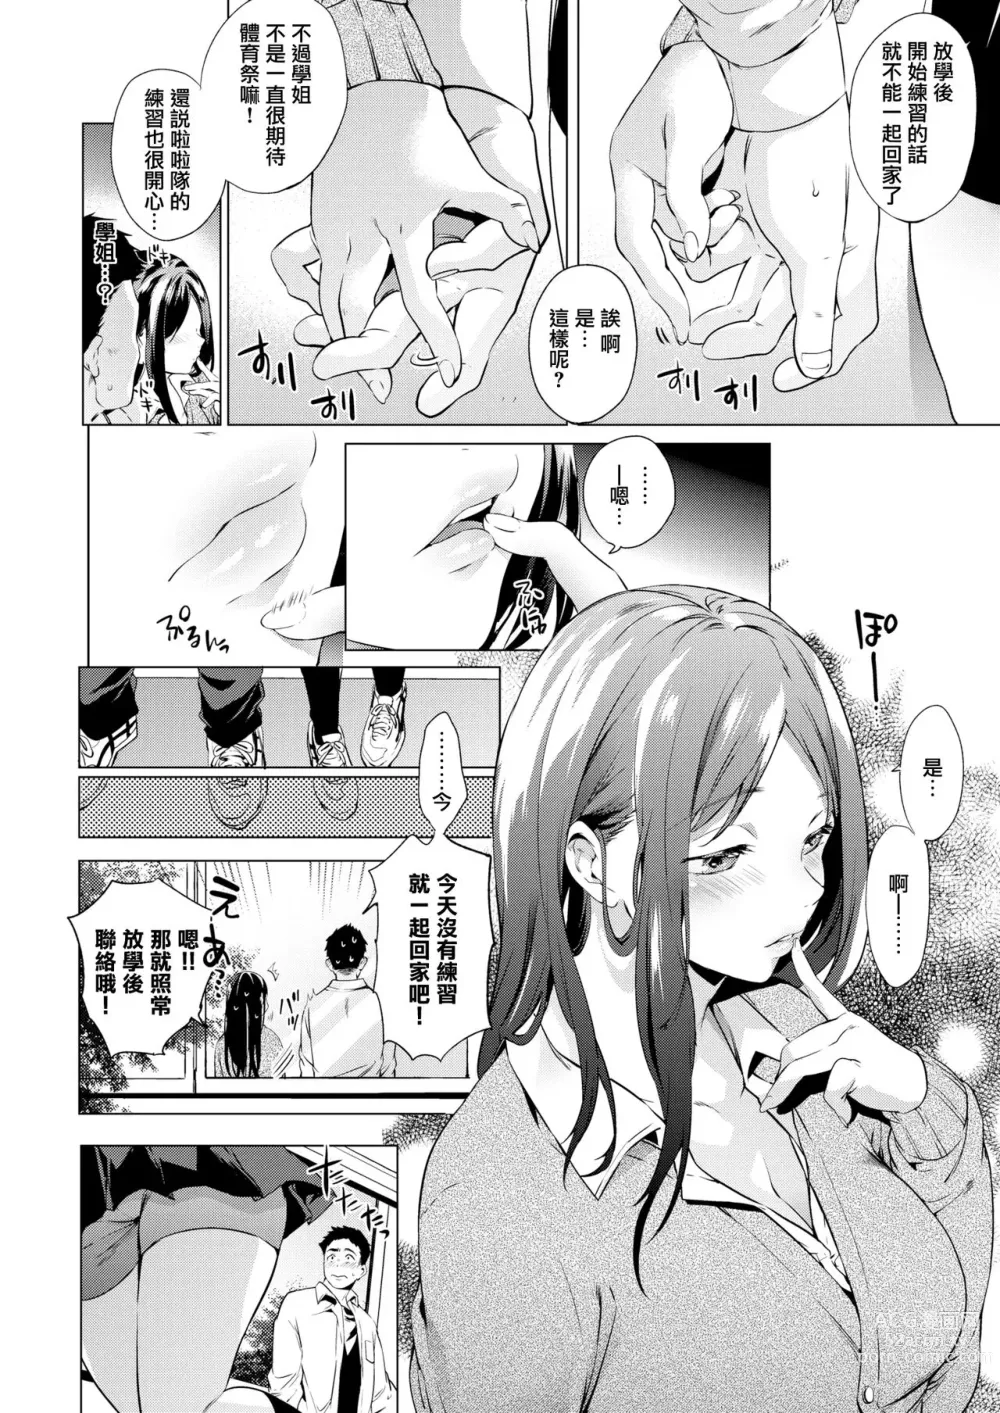 Page 9 of manga Kaikan Switch